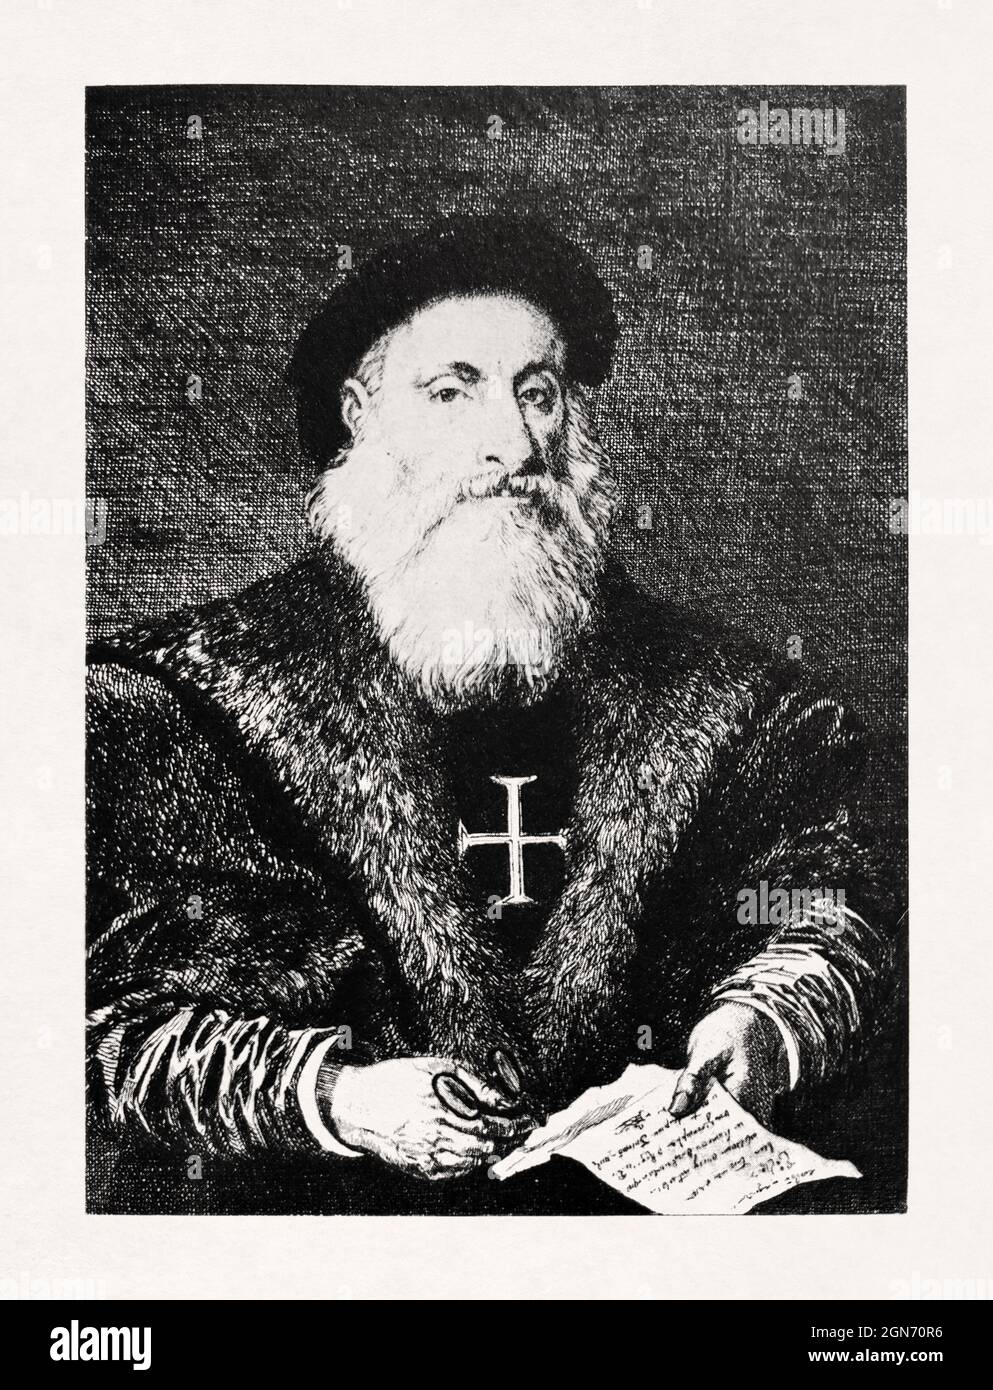 Retrato del explorador portugués Vasco da Gama hecho por un artista desconocido a principios del siglo 16th. Foto de stock